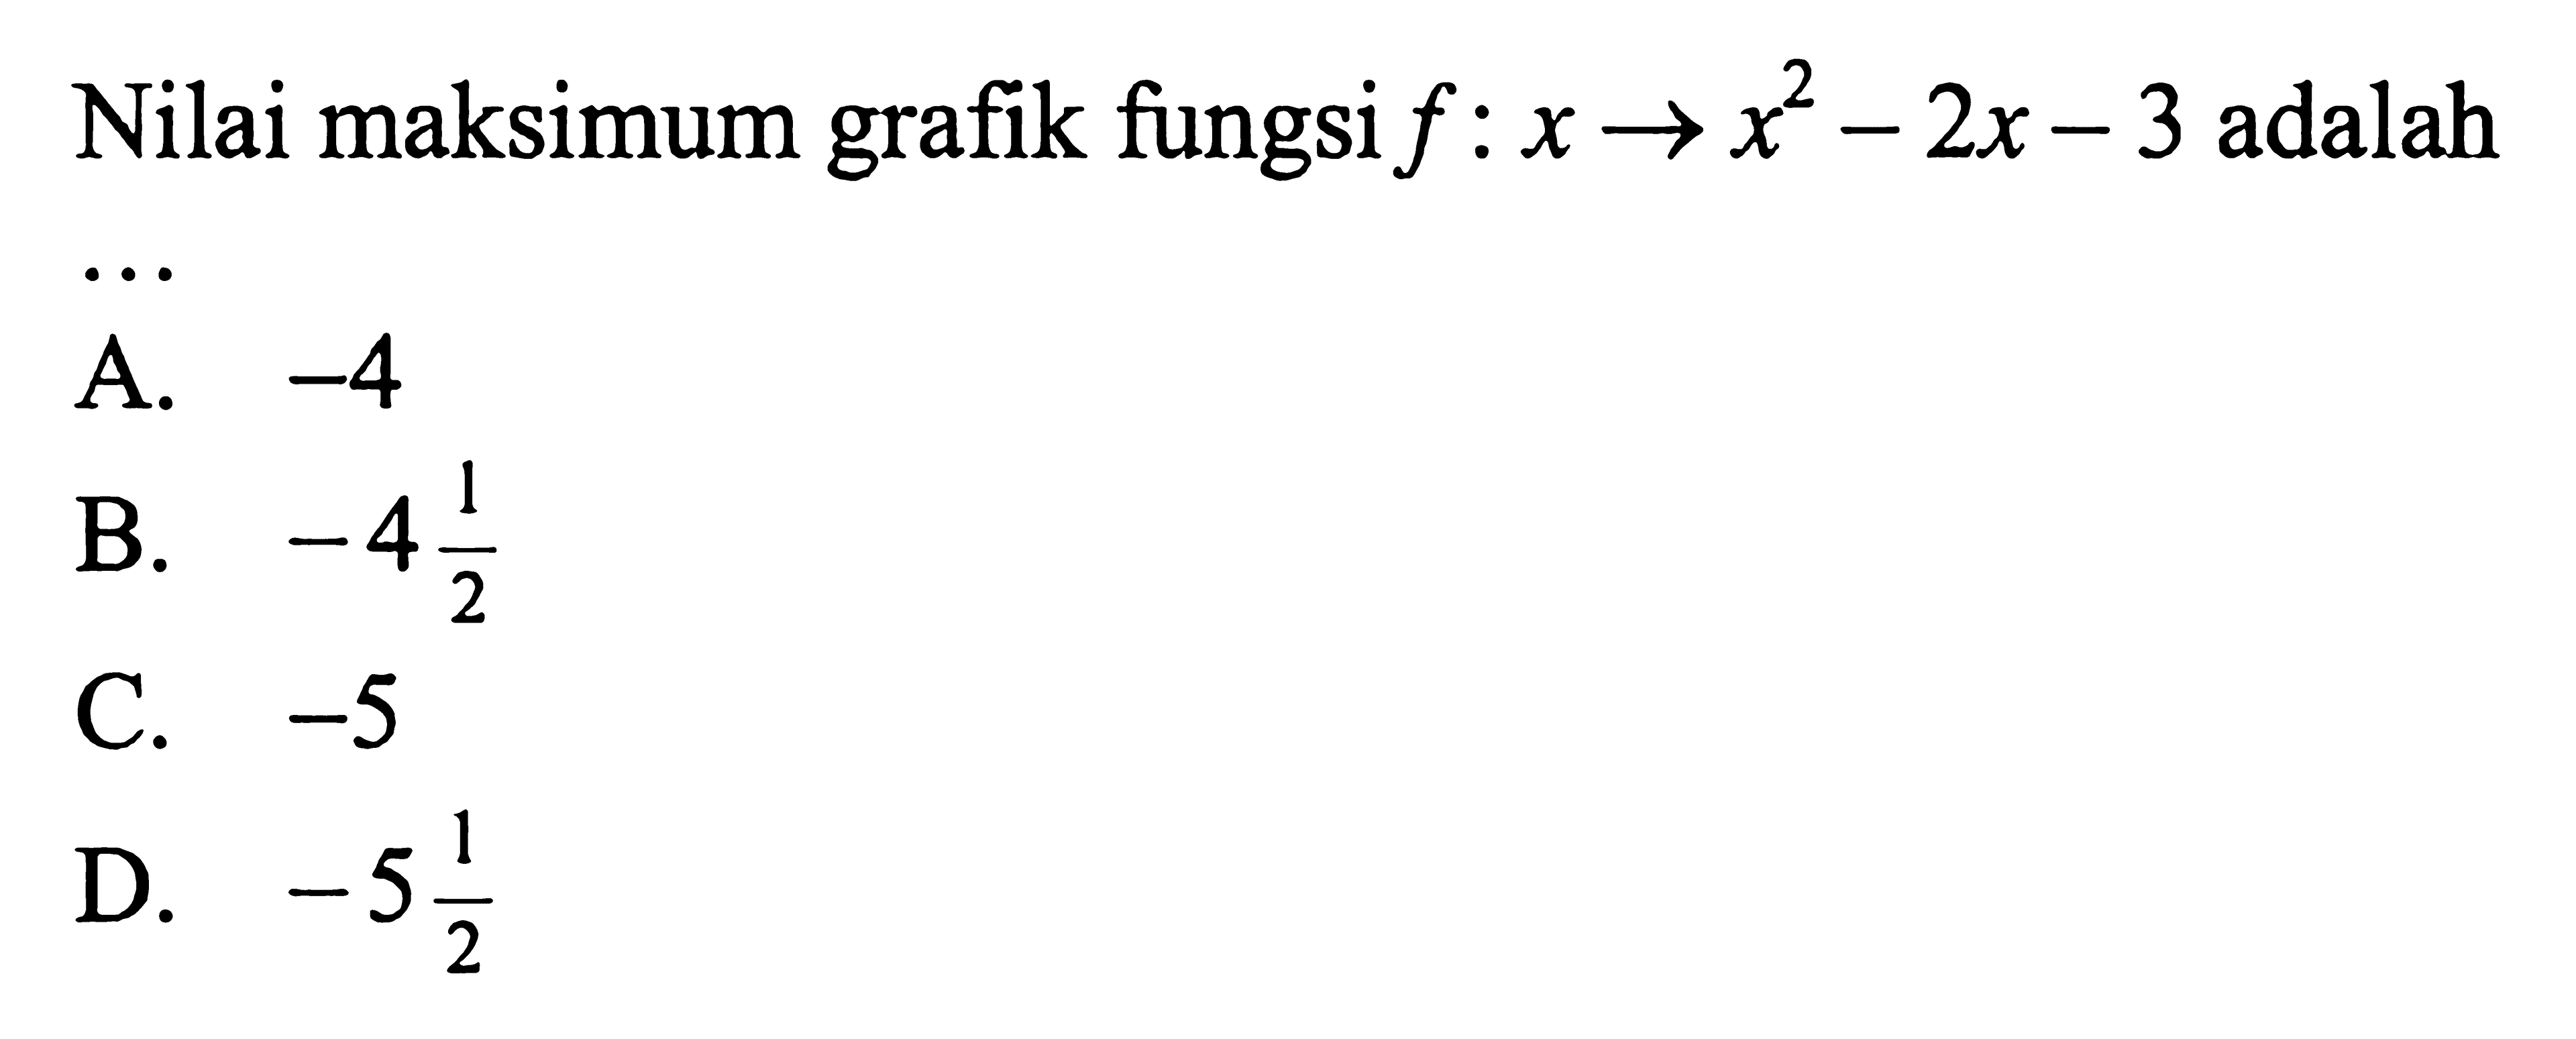 Nilai maksimum grafik fungsi f : x -> x^2 - 2x - 3 adalah...